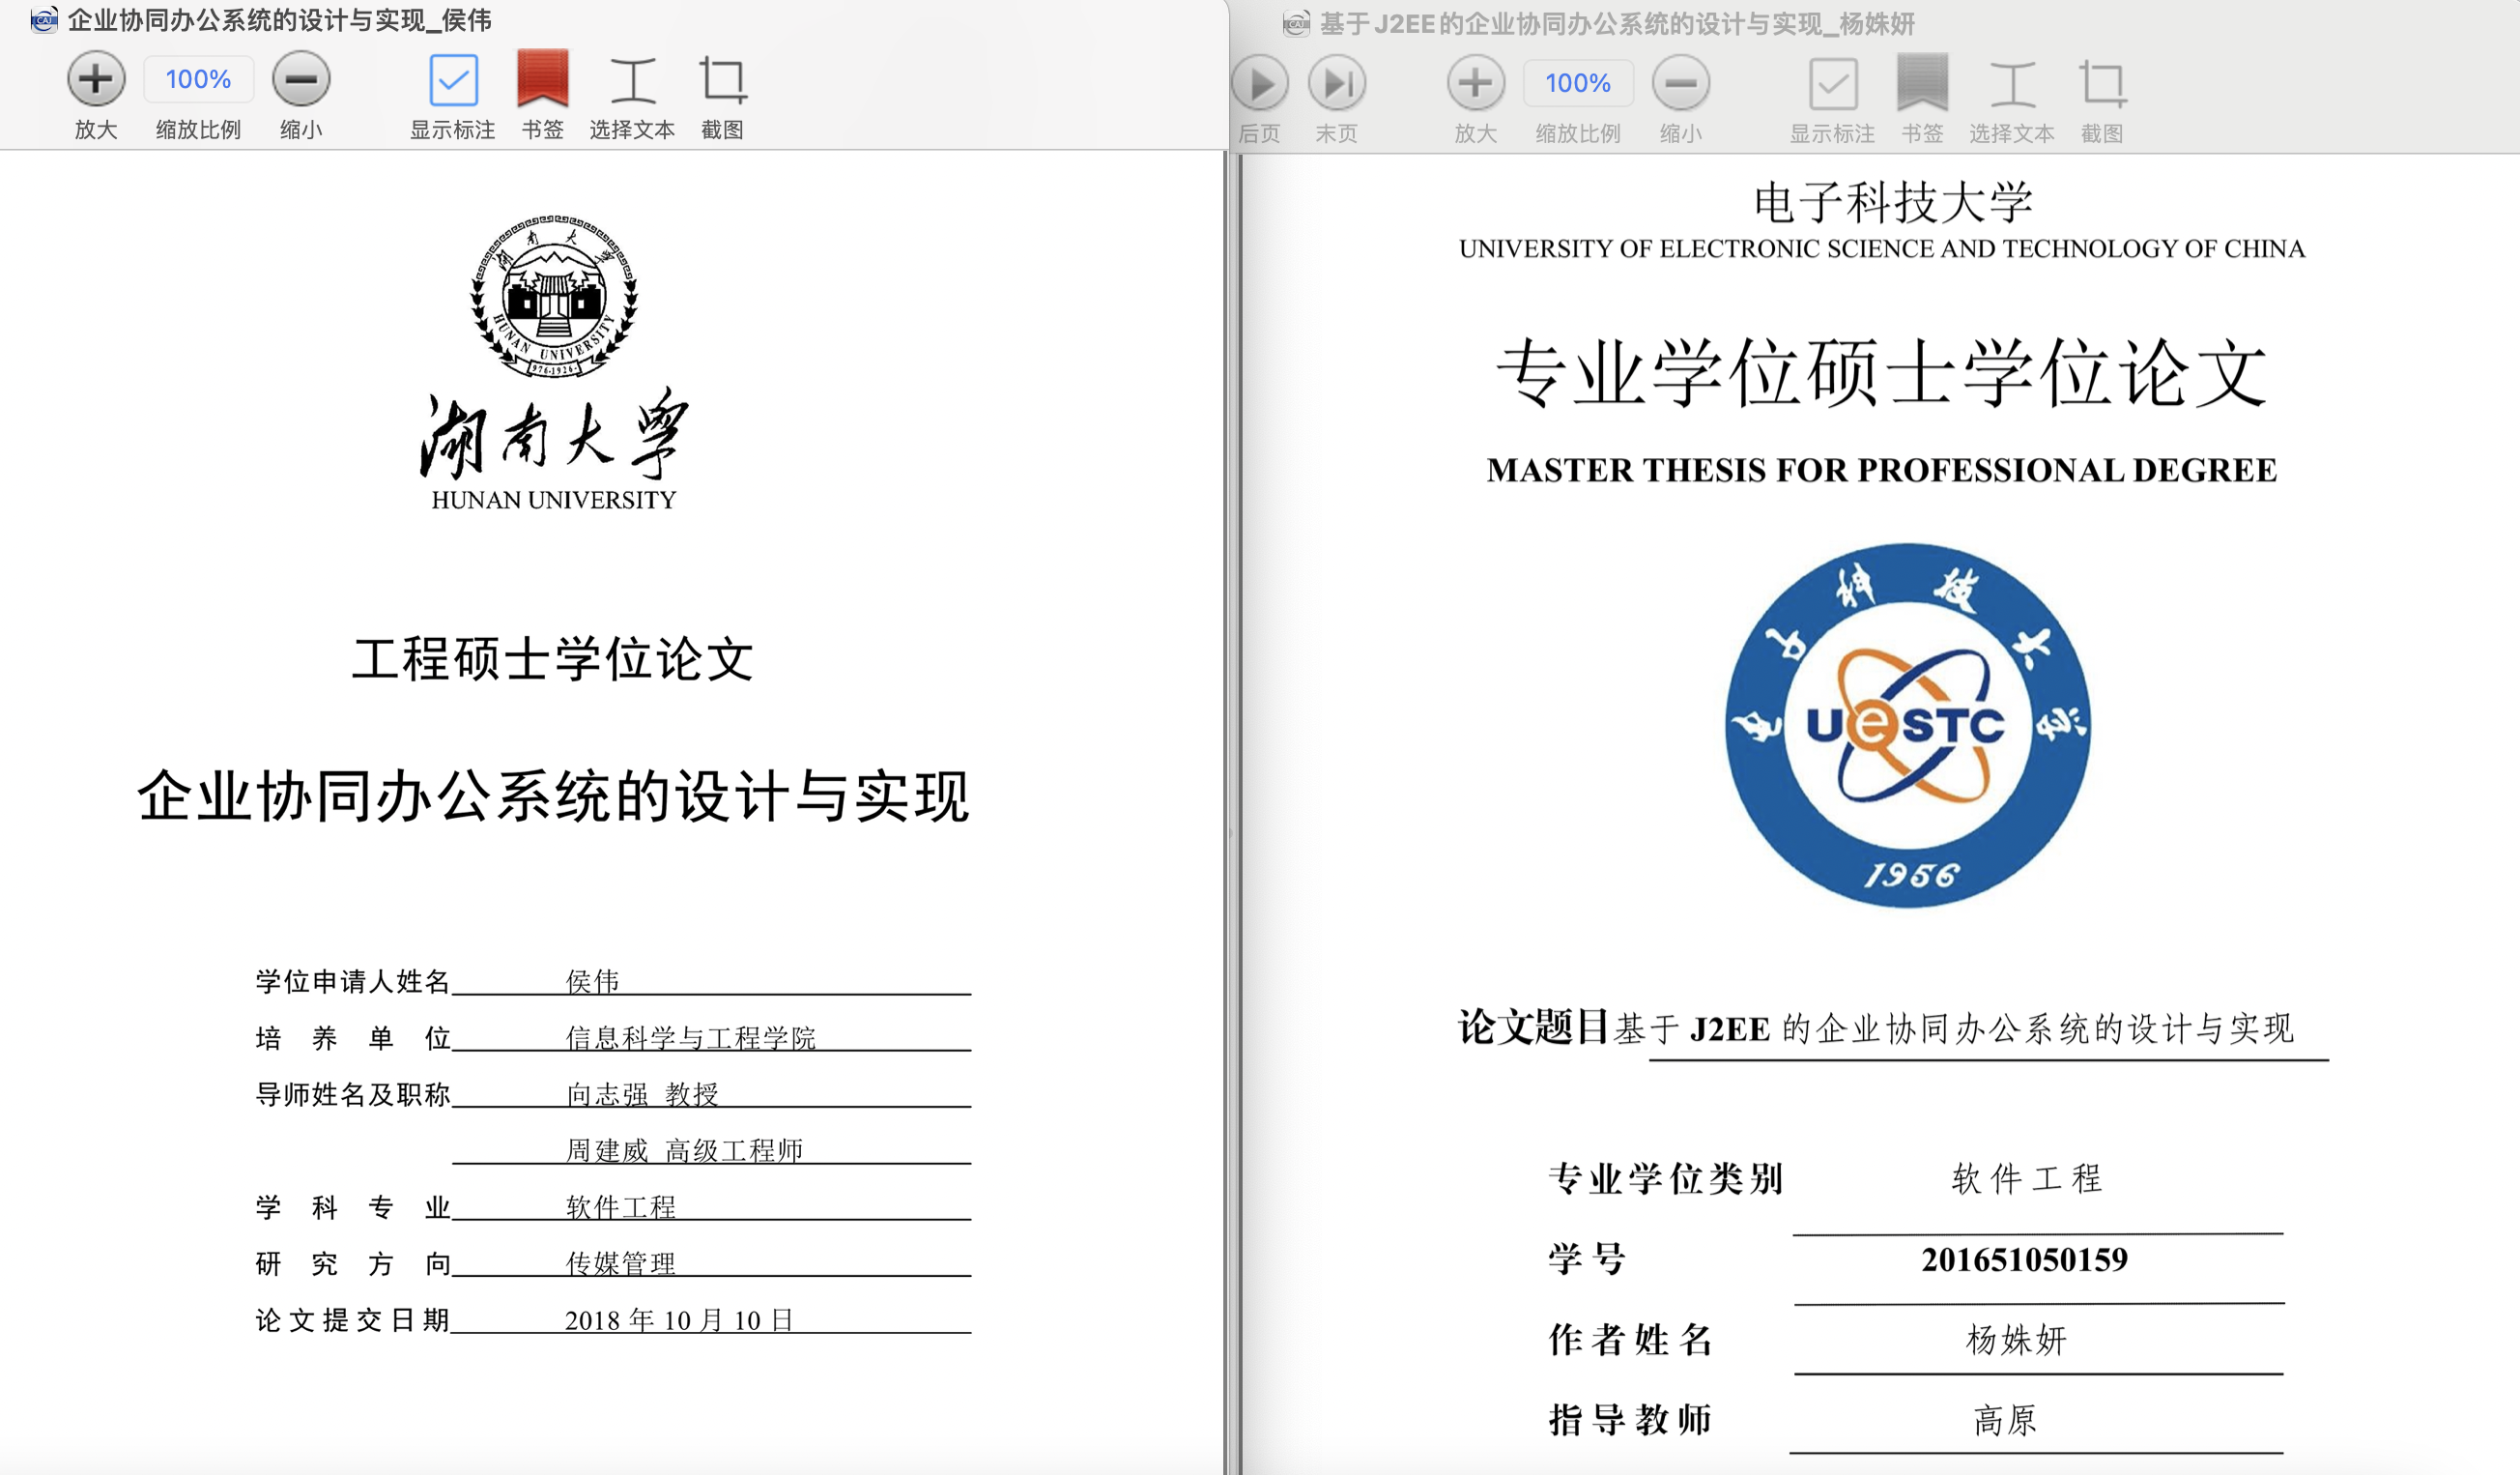 湖南大学侯伟的硕士学位论文封面（左），电子科技大学杨姝妍的硕士学位论文封面（右）。 论文截图